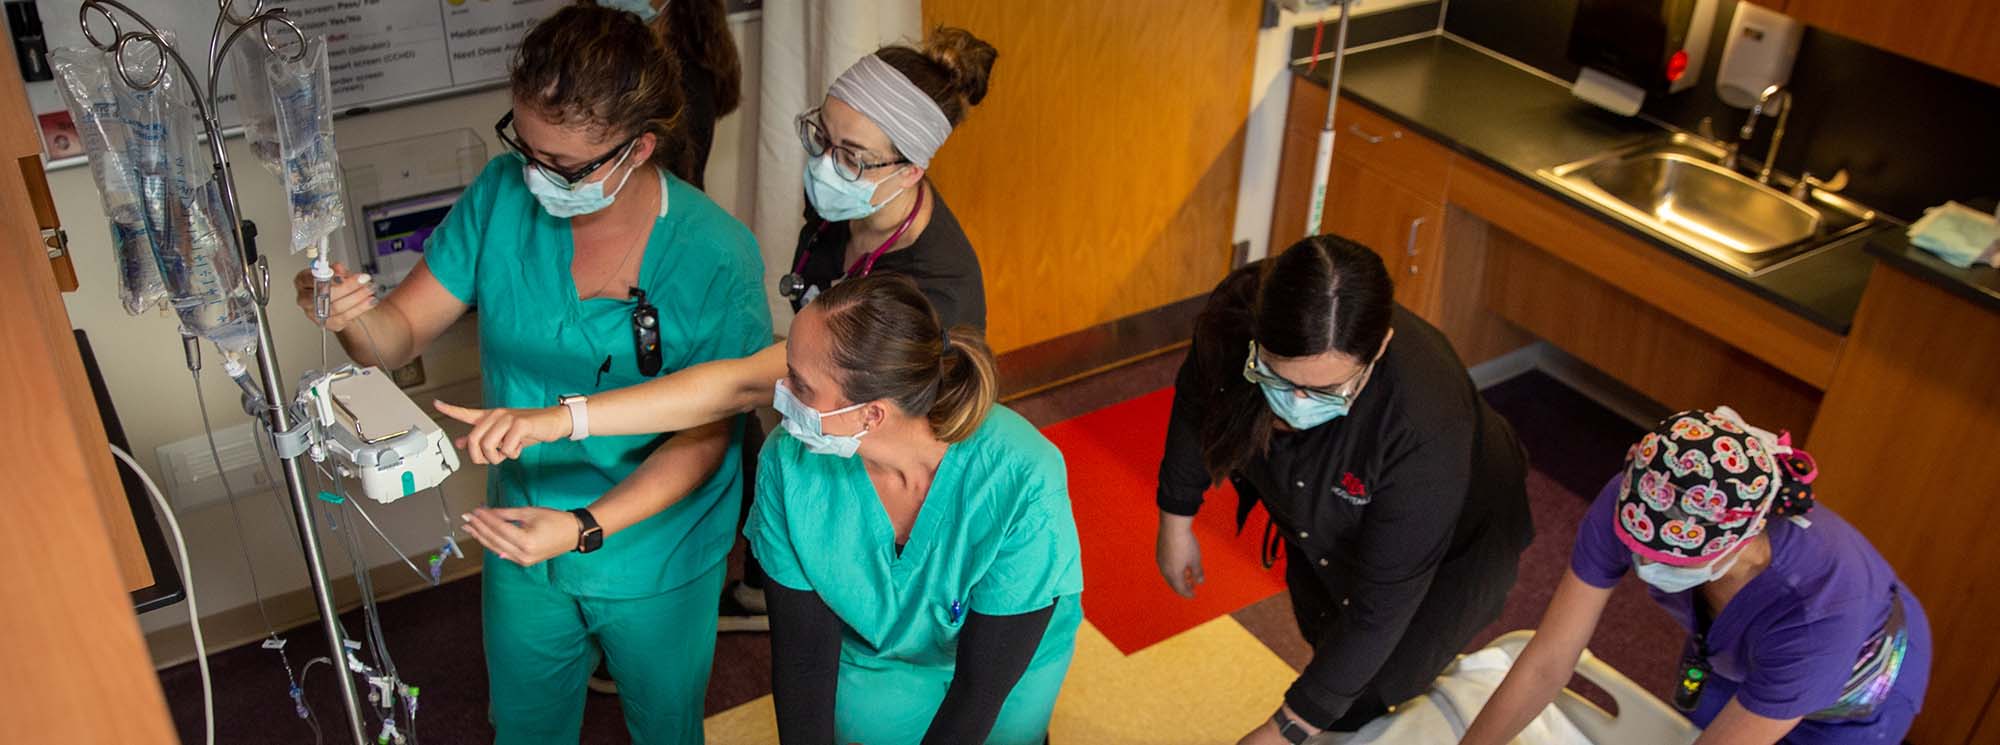 Pflegestudenten arbeiten gemeinsam an einem Patienten